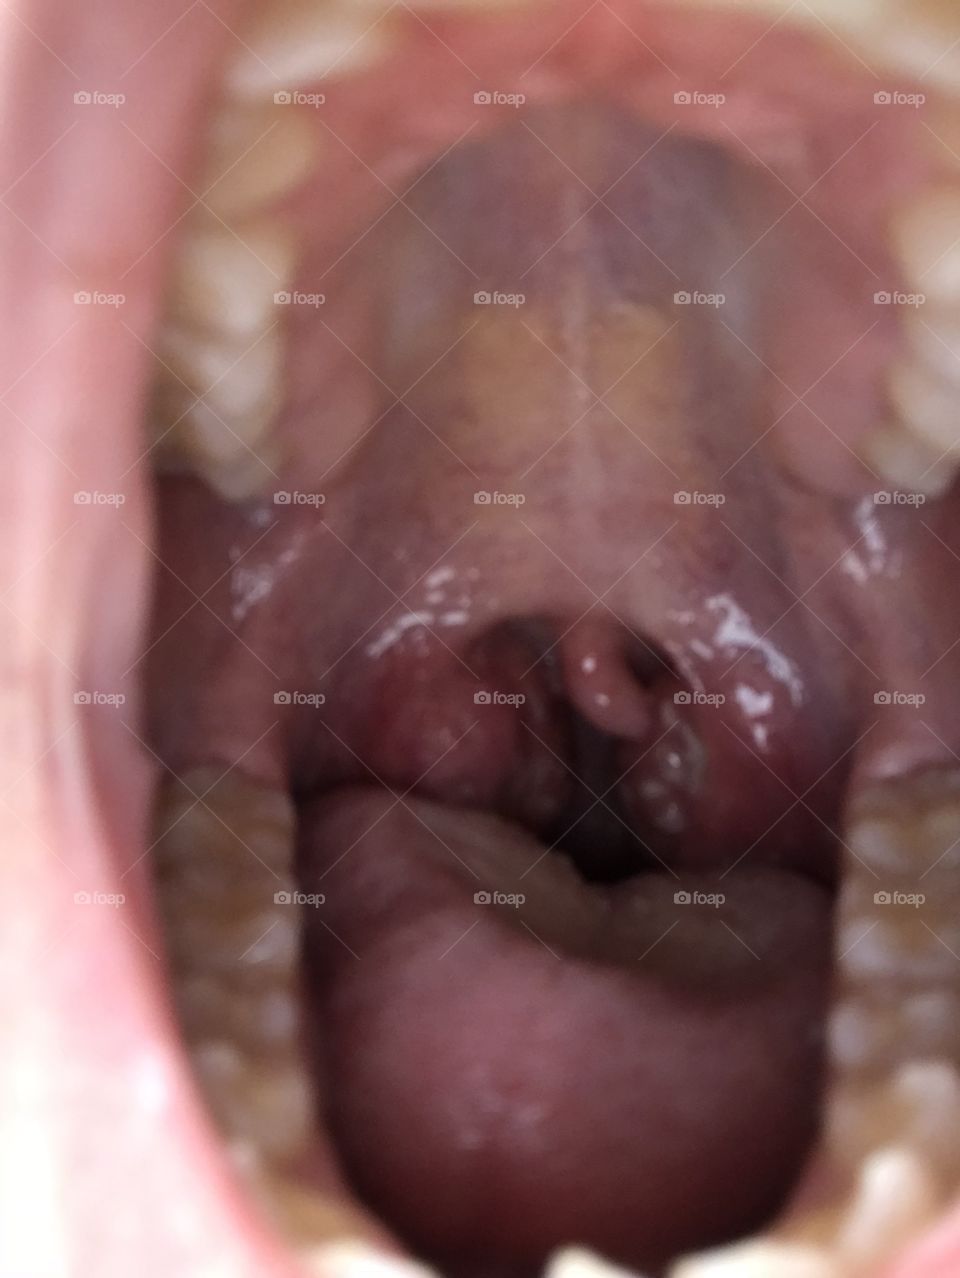 Swollen Tonsils 